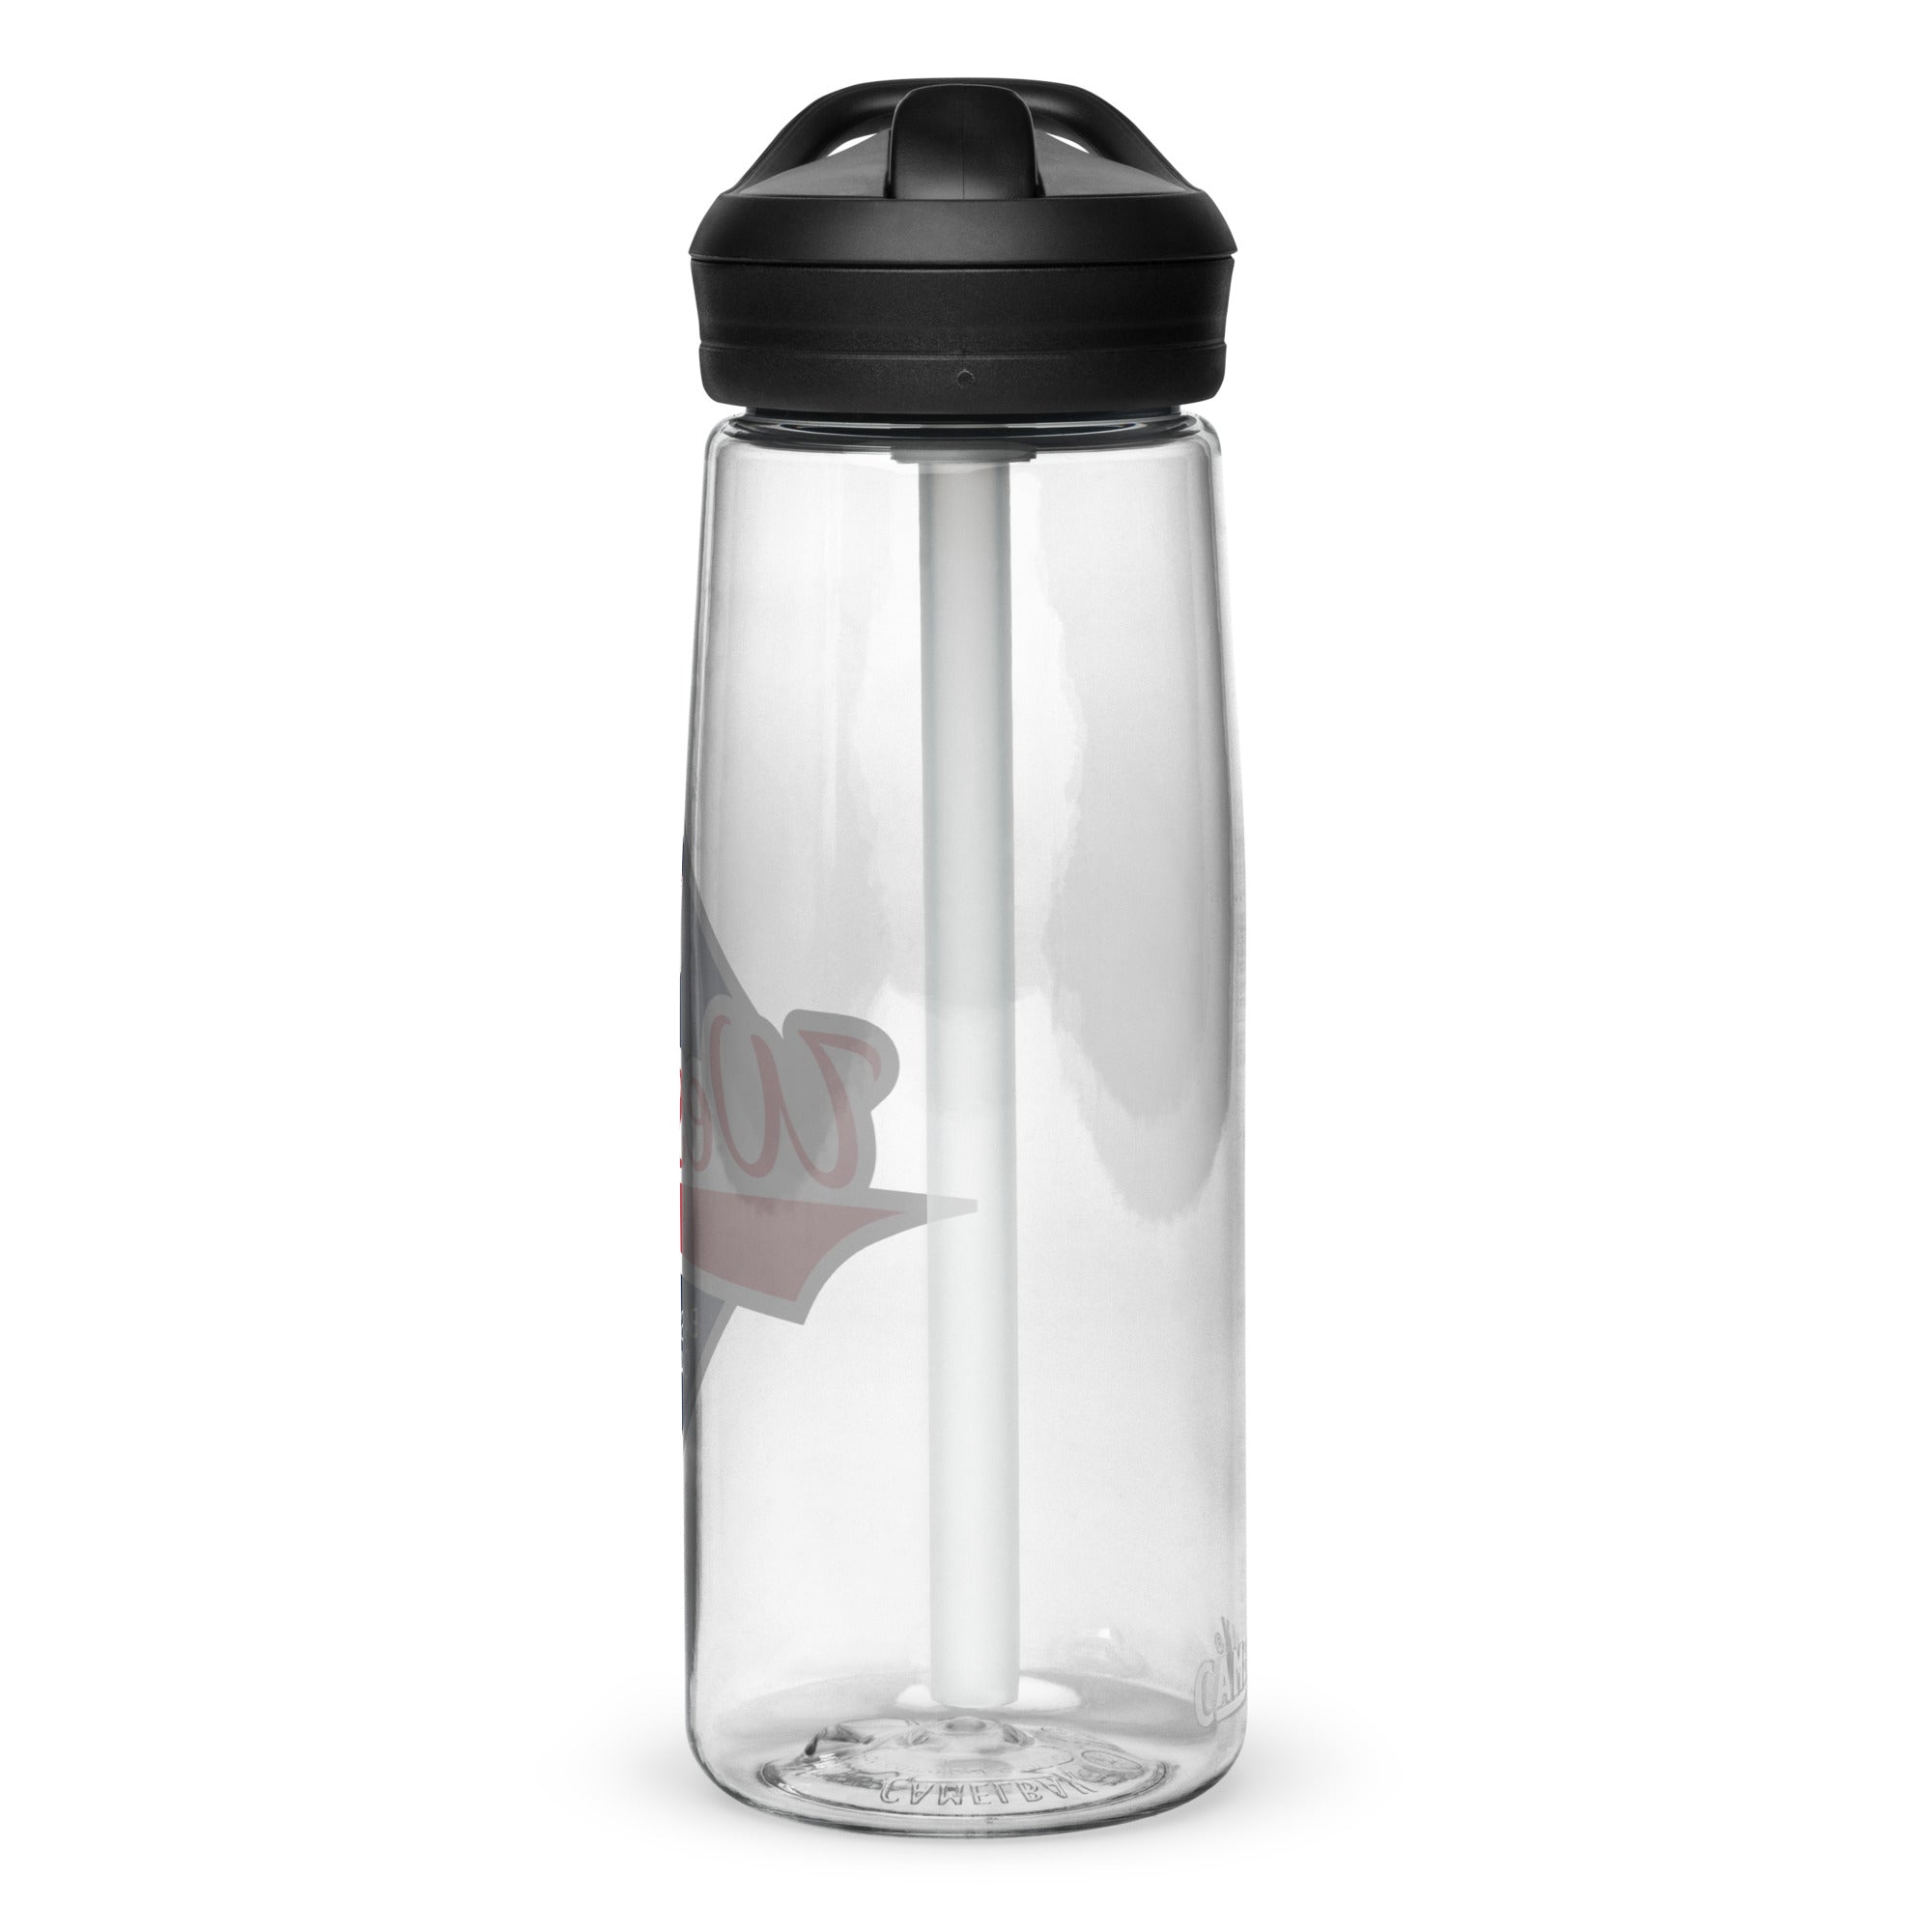 WBOL Sports water bottle